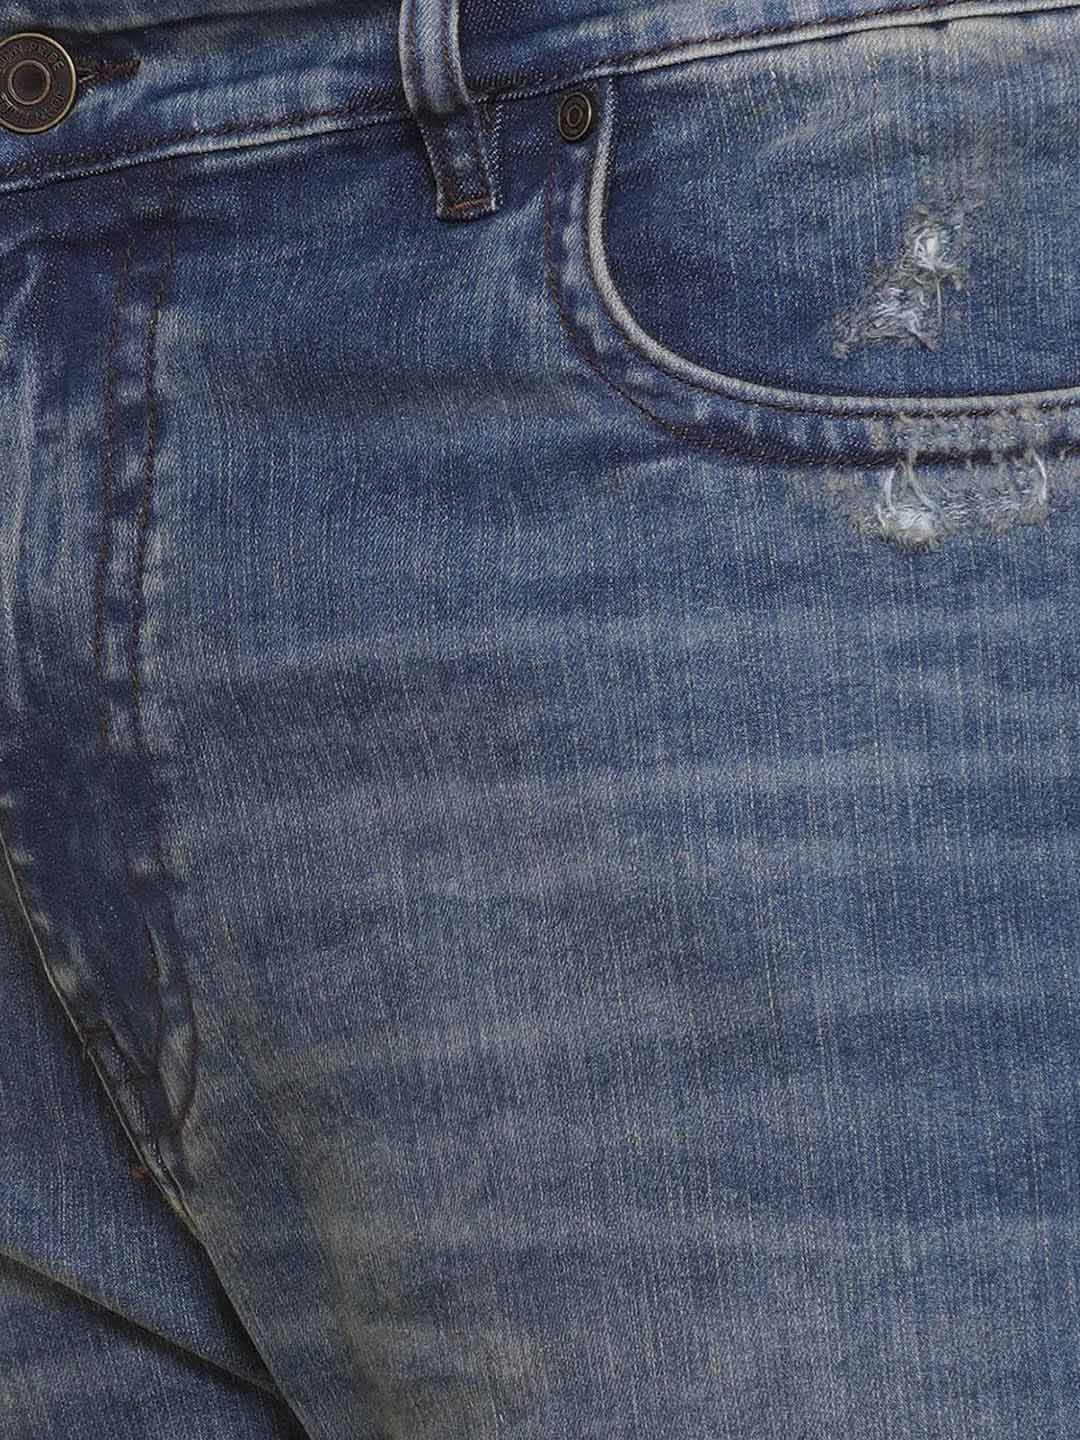 bottomwear/jeans/PJPJ60114/pjpj60114-2.jpg